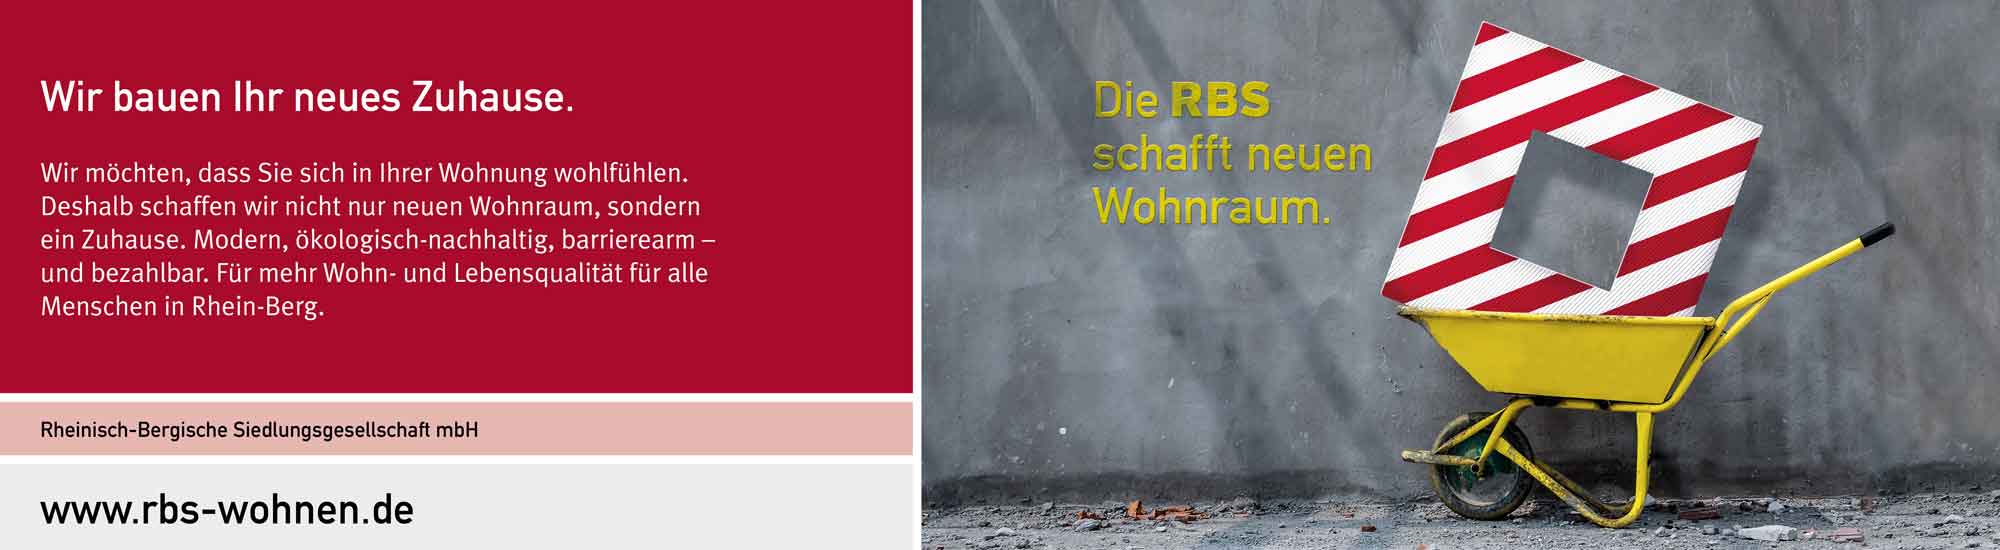 Rheinisch-Bergische Siedlungsgesellschaft mbH RBS